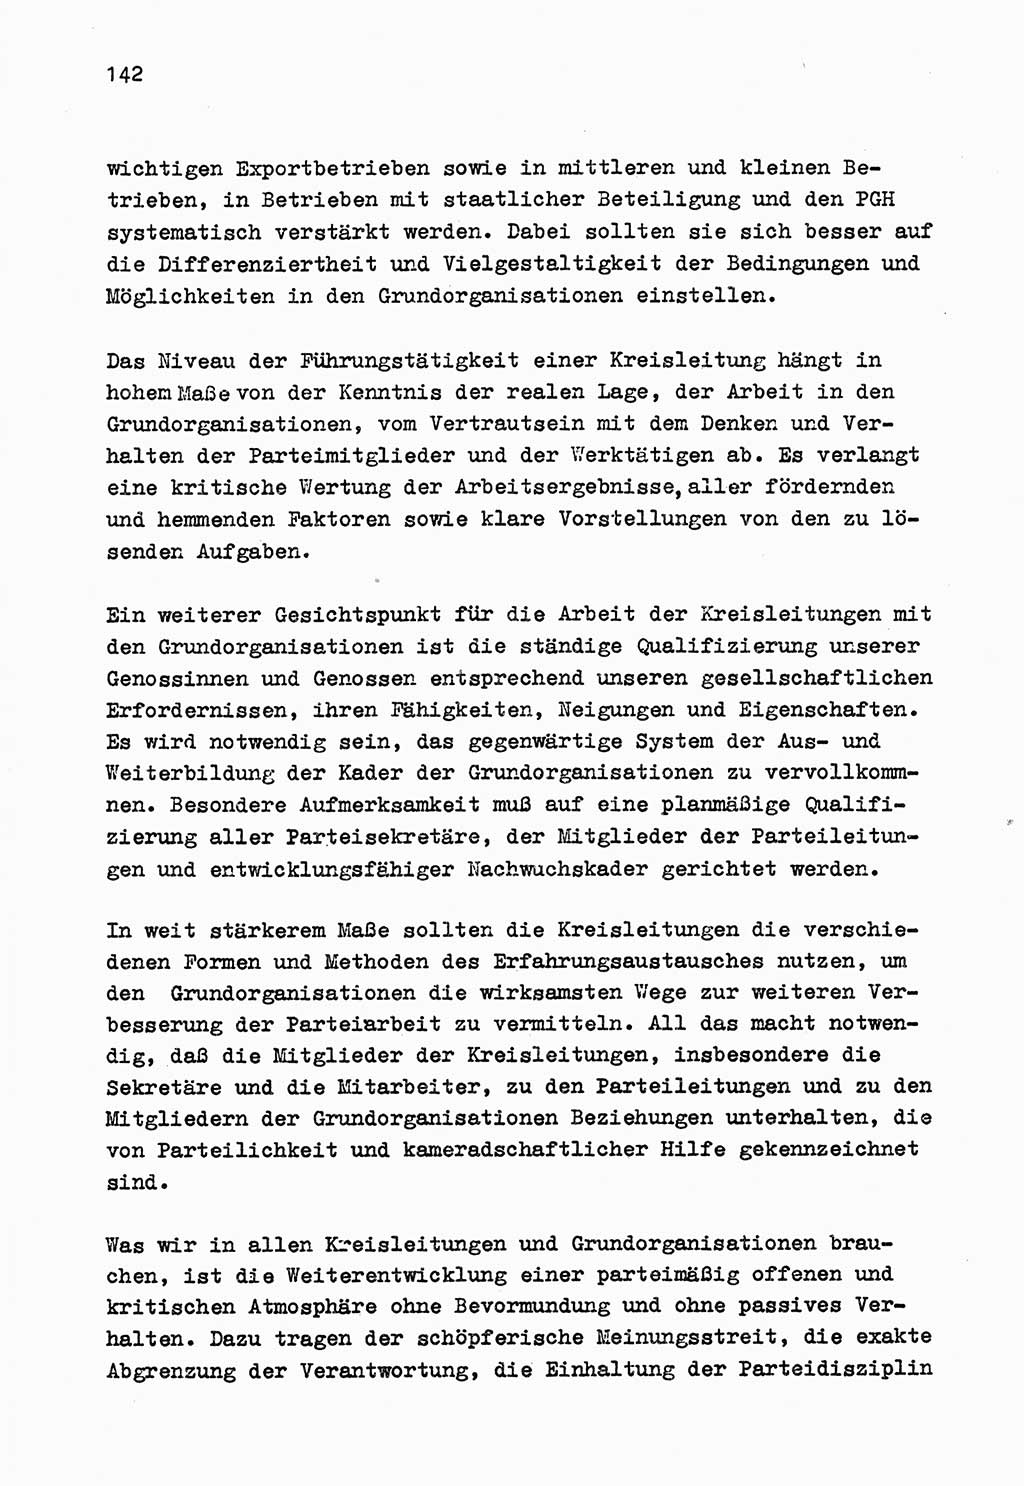 Zu Fragen der Parteiarbeit [Sozialistische Einheitspartei Deutschlands (SED) Deutsche Demokratische Republik (DDR)] 1979, Seite 142 (Fr. PA SED DDR 1979, S. 142)